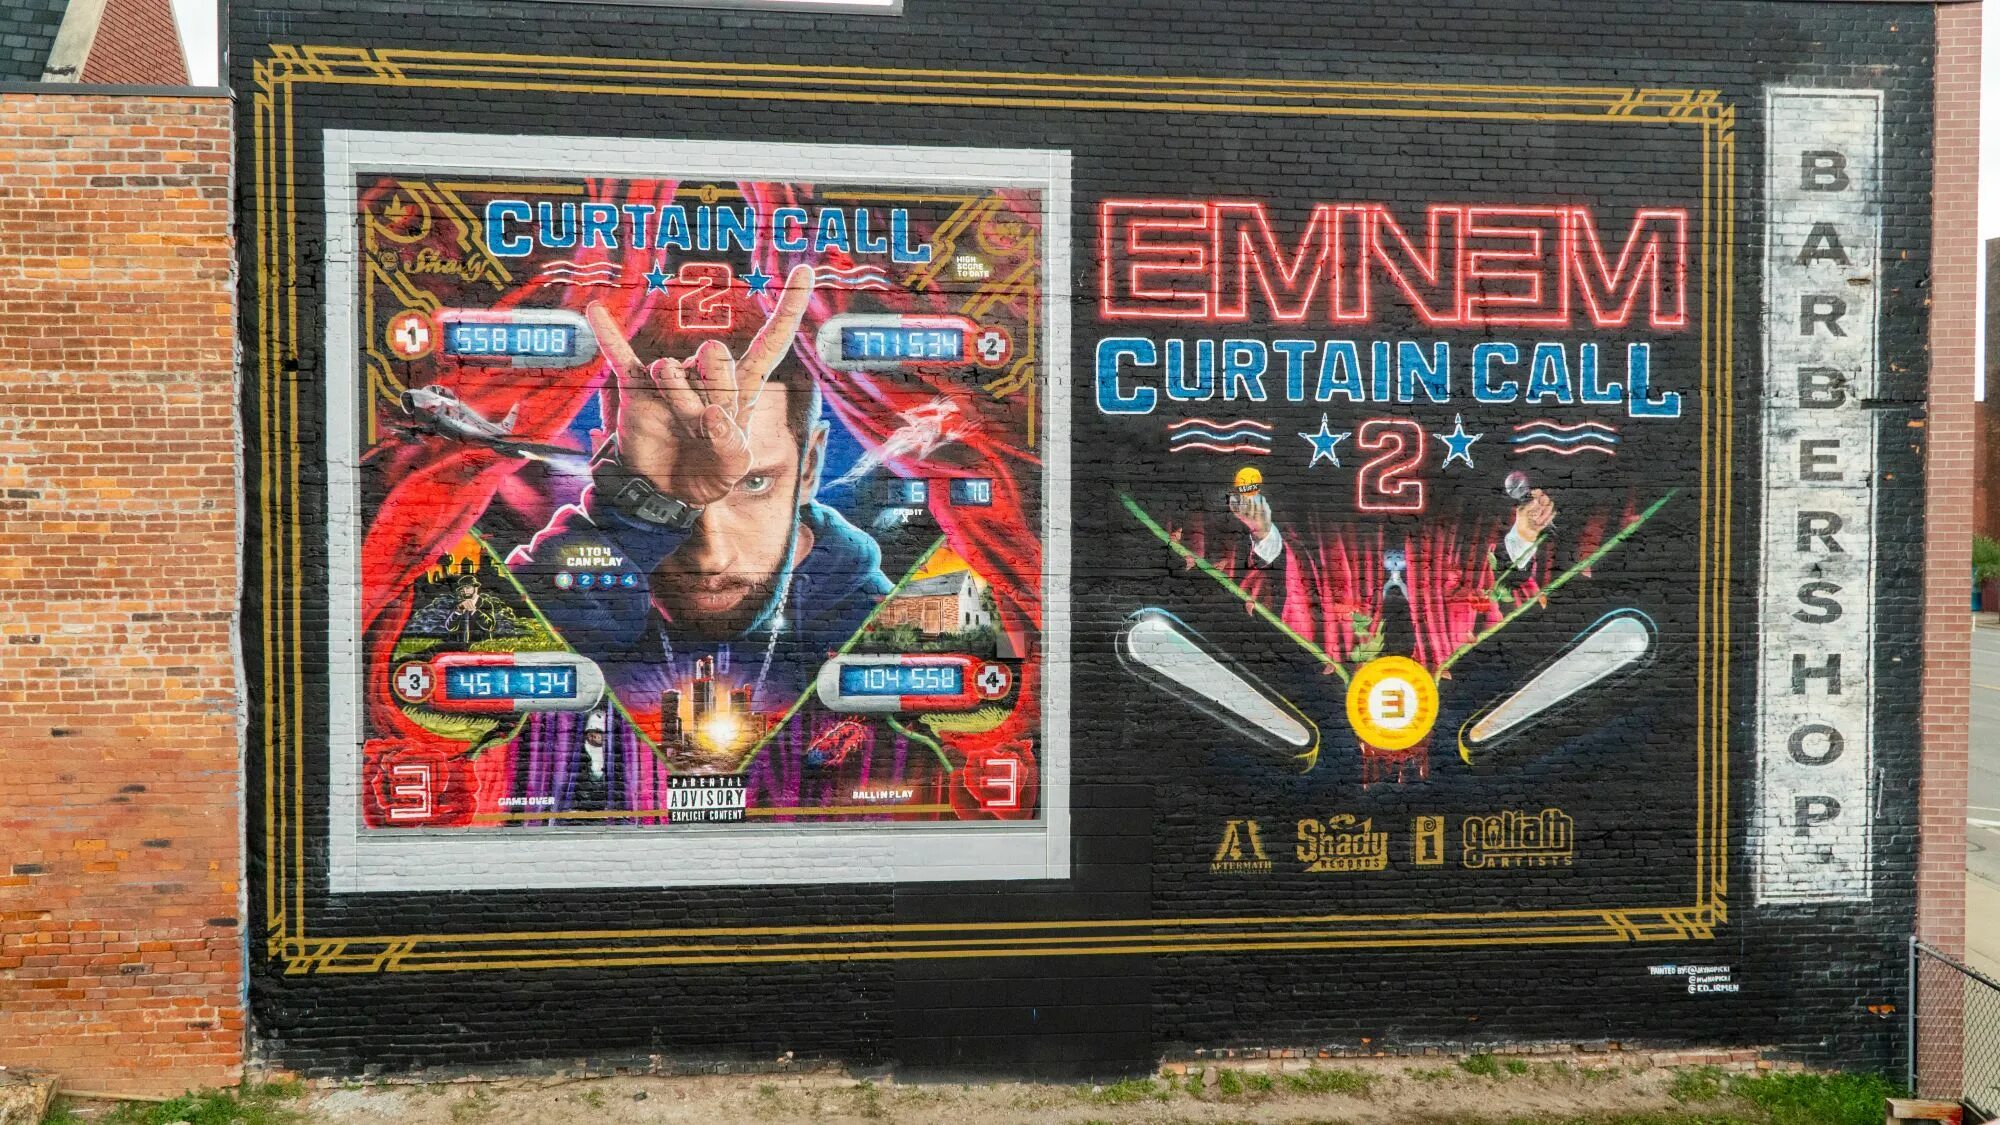 Eminem curtain. Eminem Curtain Call 2. Эминема Curtain Call. Eminem. Curtain Call. The Hits. 2005. Альбомы Эминема Curtain Call.